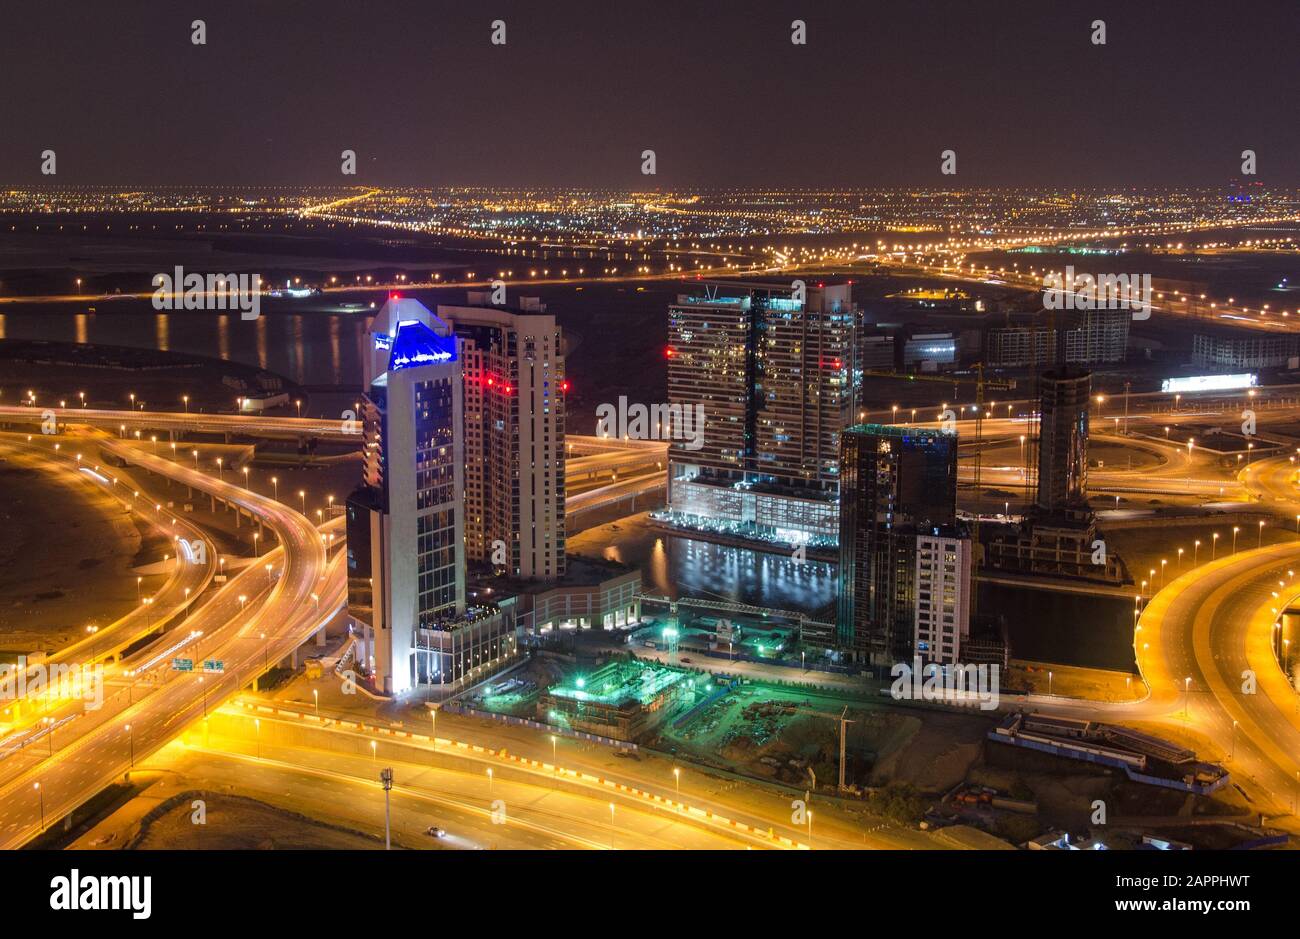 Nachtstadt, Stadtbild von Dubai, Vereinigte Arabische Emirate, moderne futuristische Architektur Nachtbeleuchtung, luxuriöses Reisekonzept Stockfoto